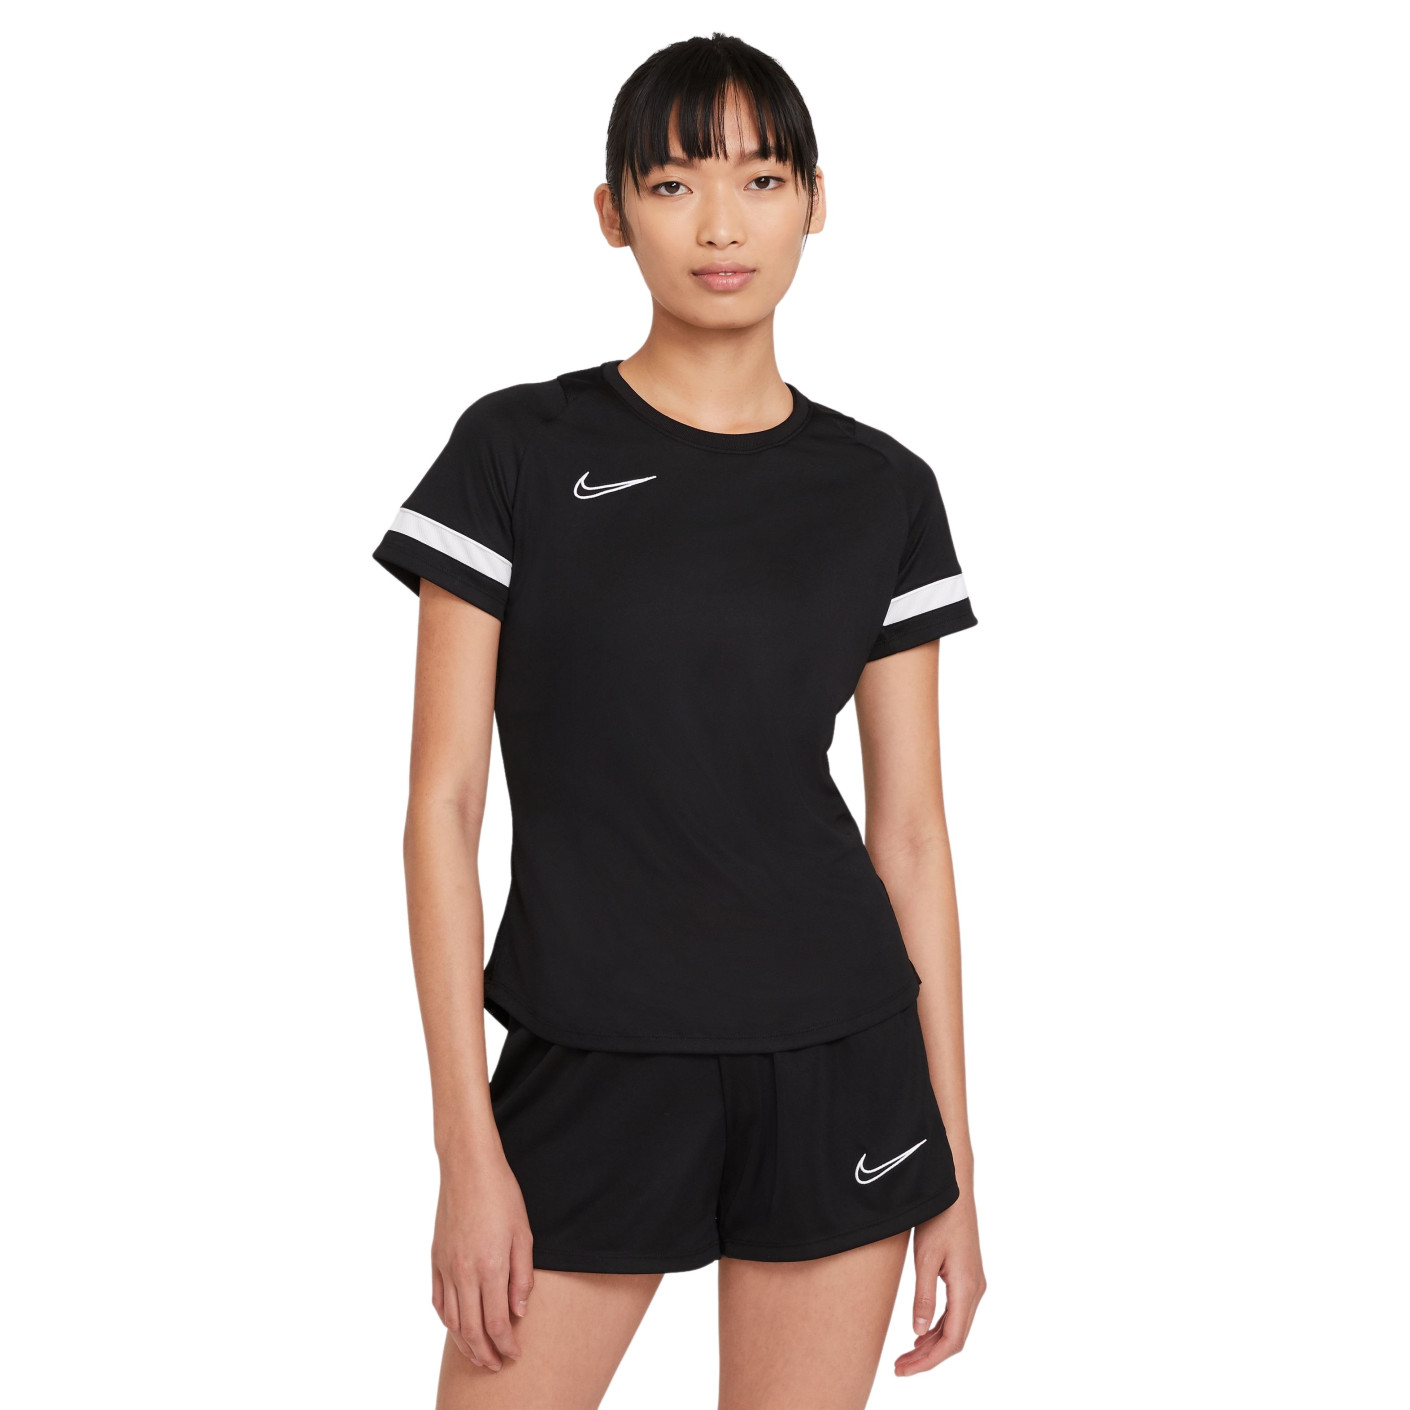 Chemise d'entraînement Nike Dri-Fit Academy 21 pour femme, noir et blanc